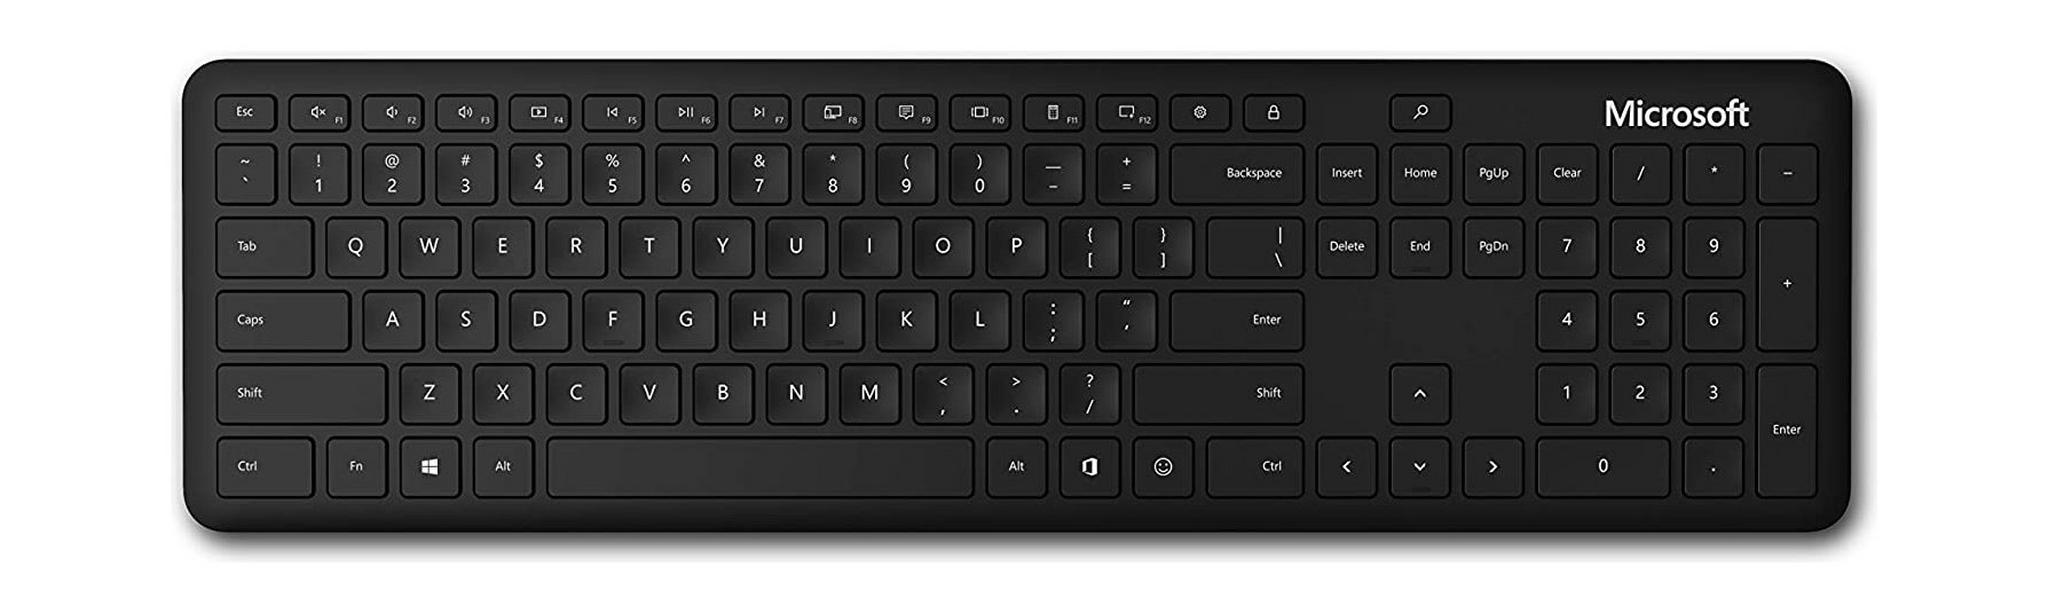 لوحة مفاتيح مايكروسوفت بتقنية البلوتوث(QSZ-00016) – أسود